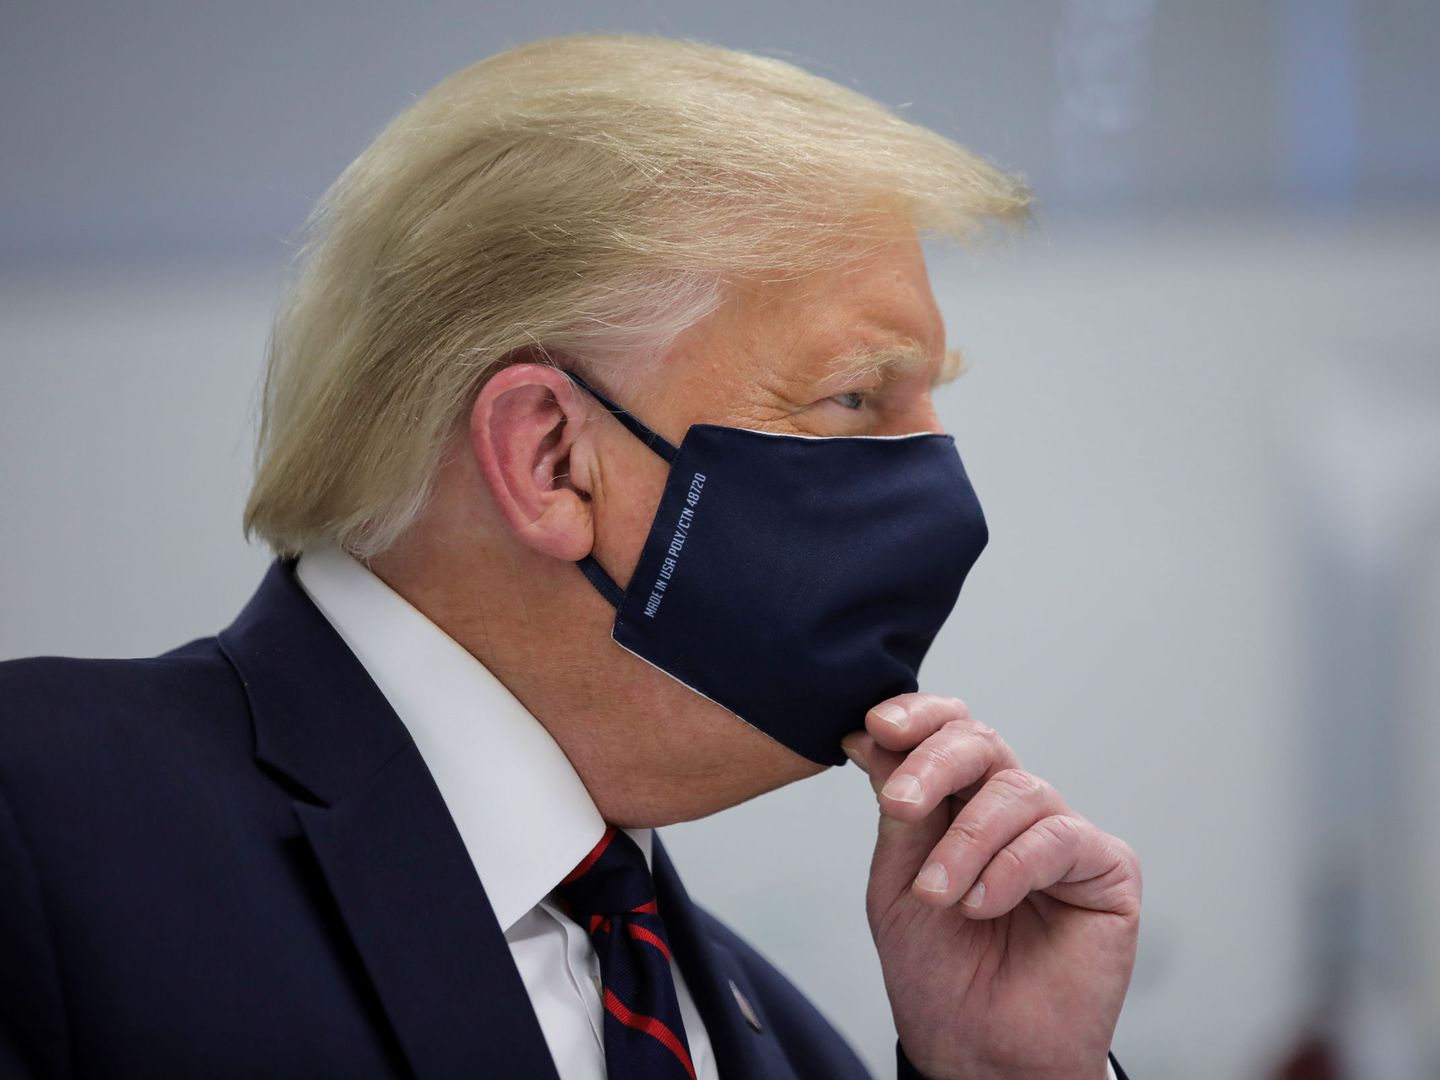 El presidente de EEUU, Donald Trump, con mascarilla. (Reuters)